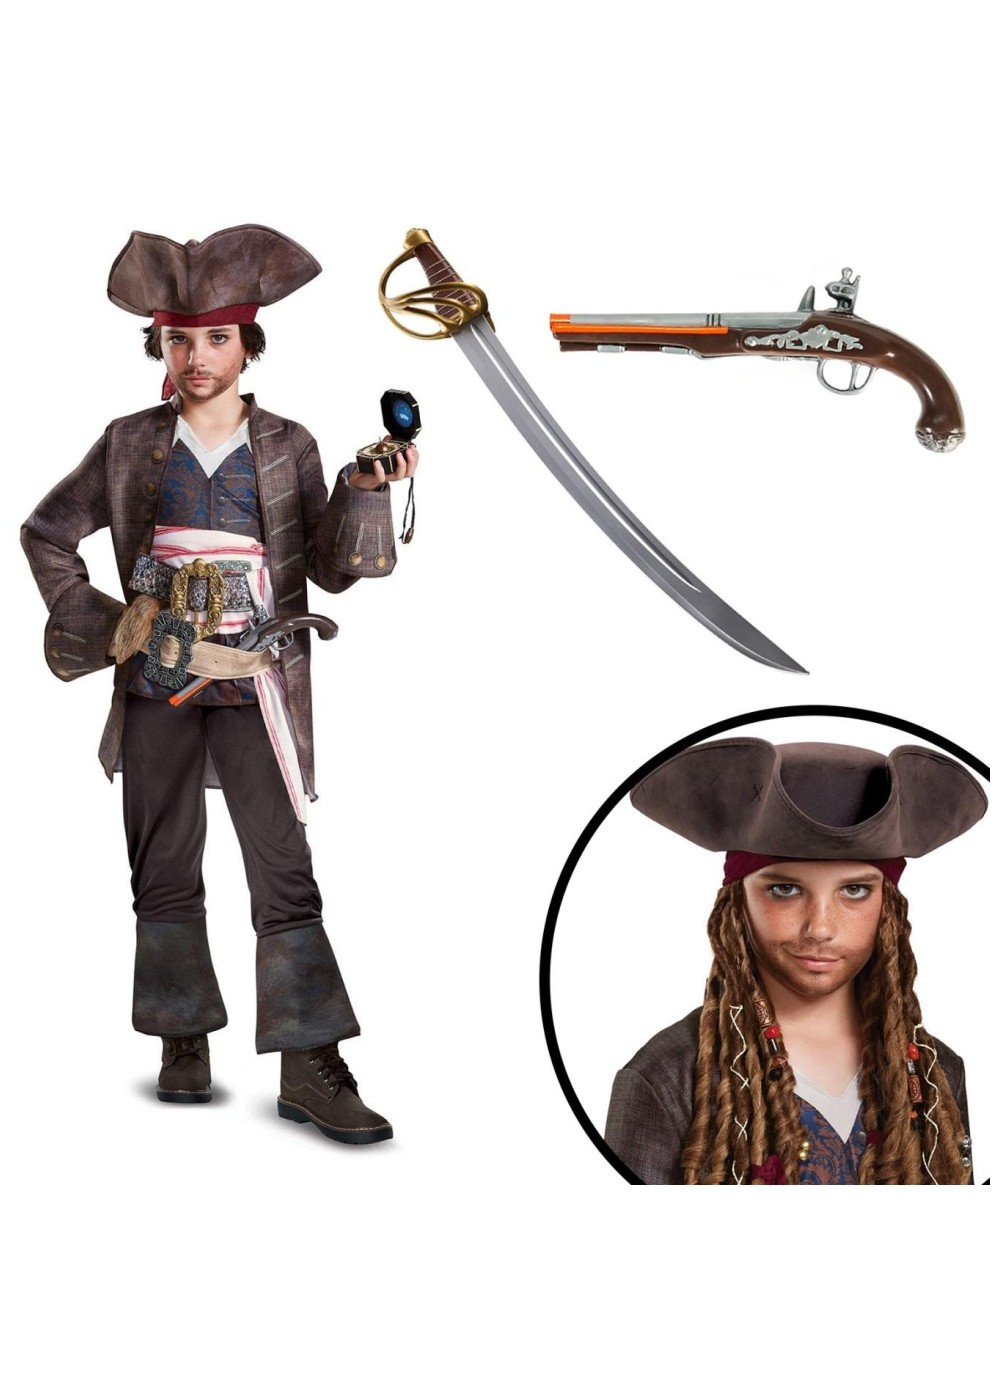 captain jack sparrow costume for boys